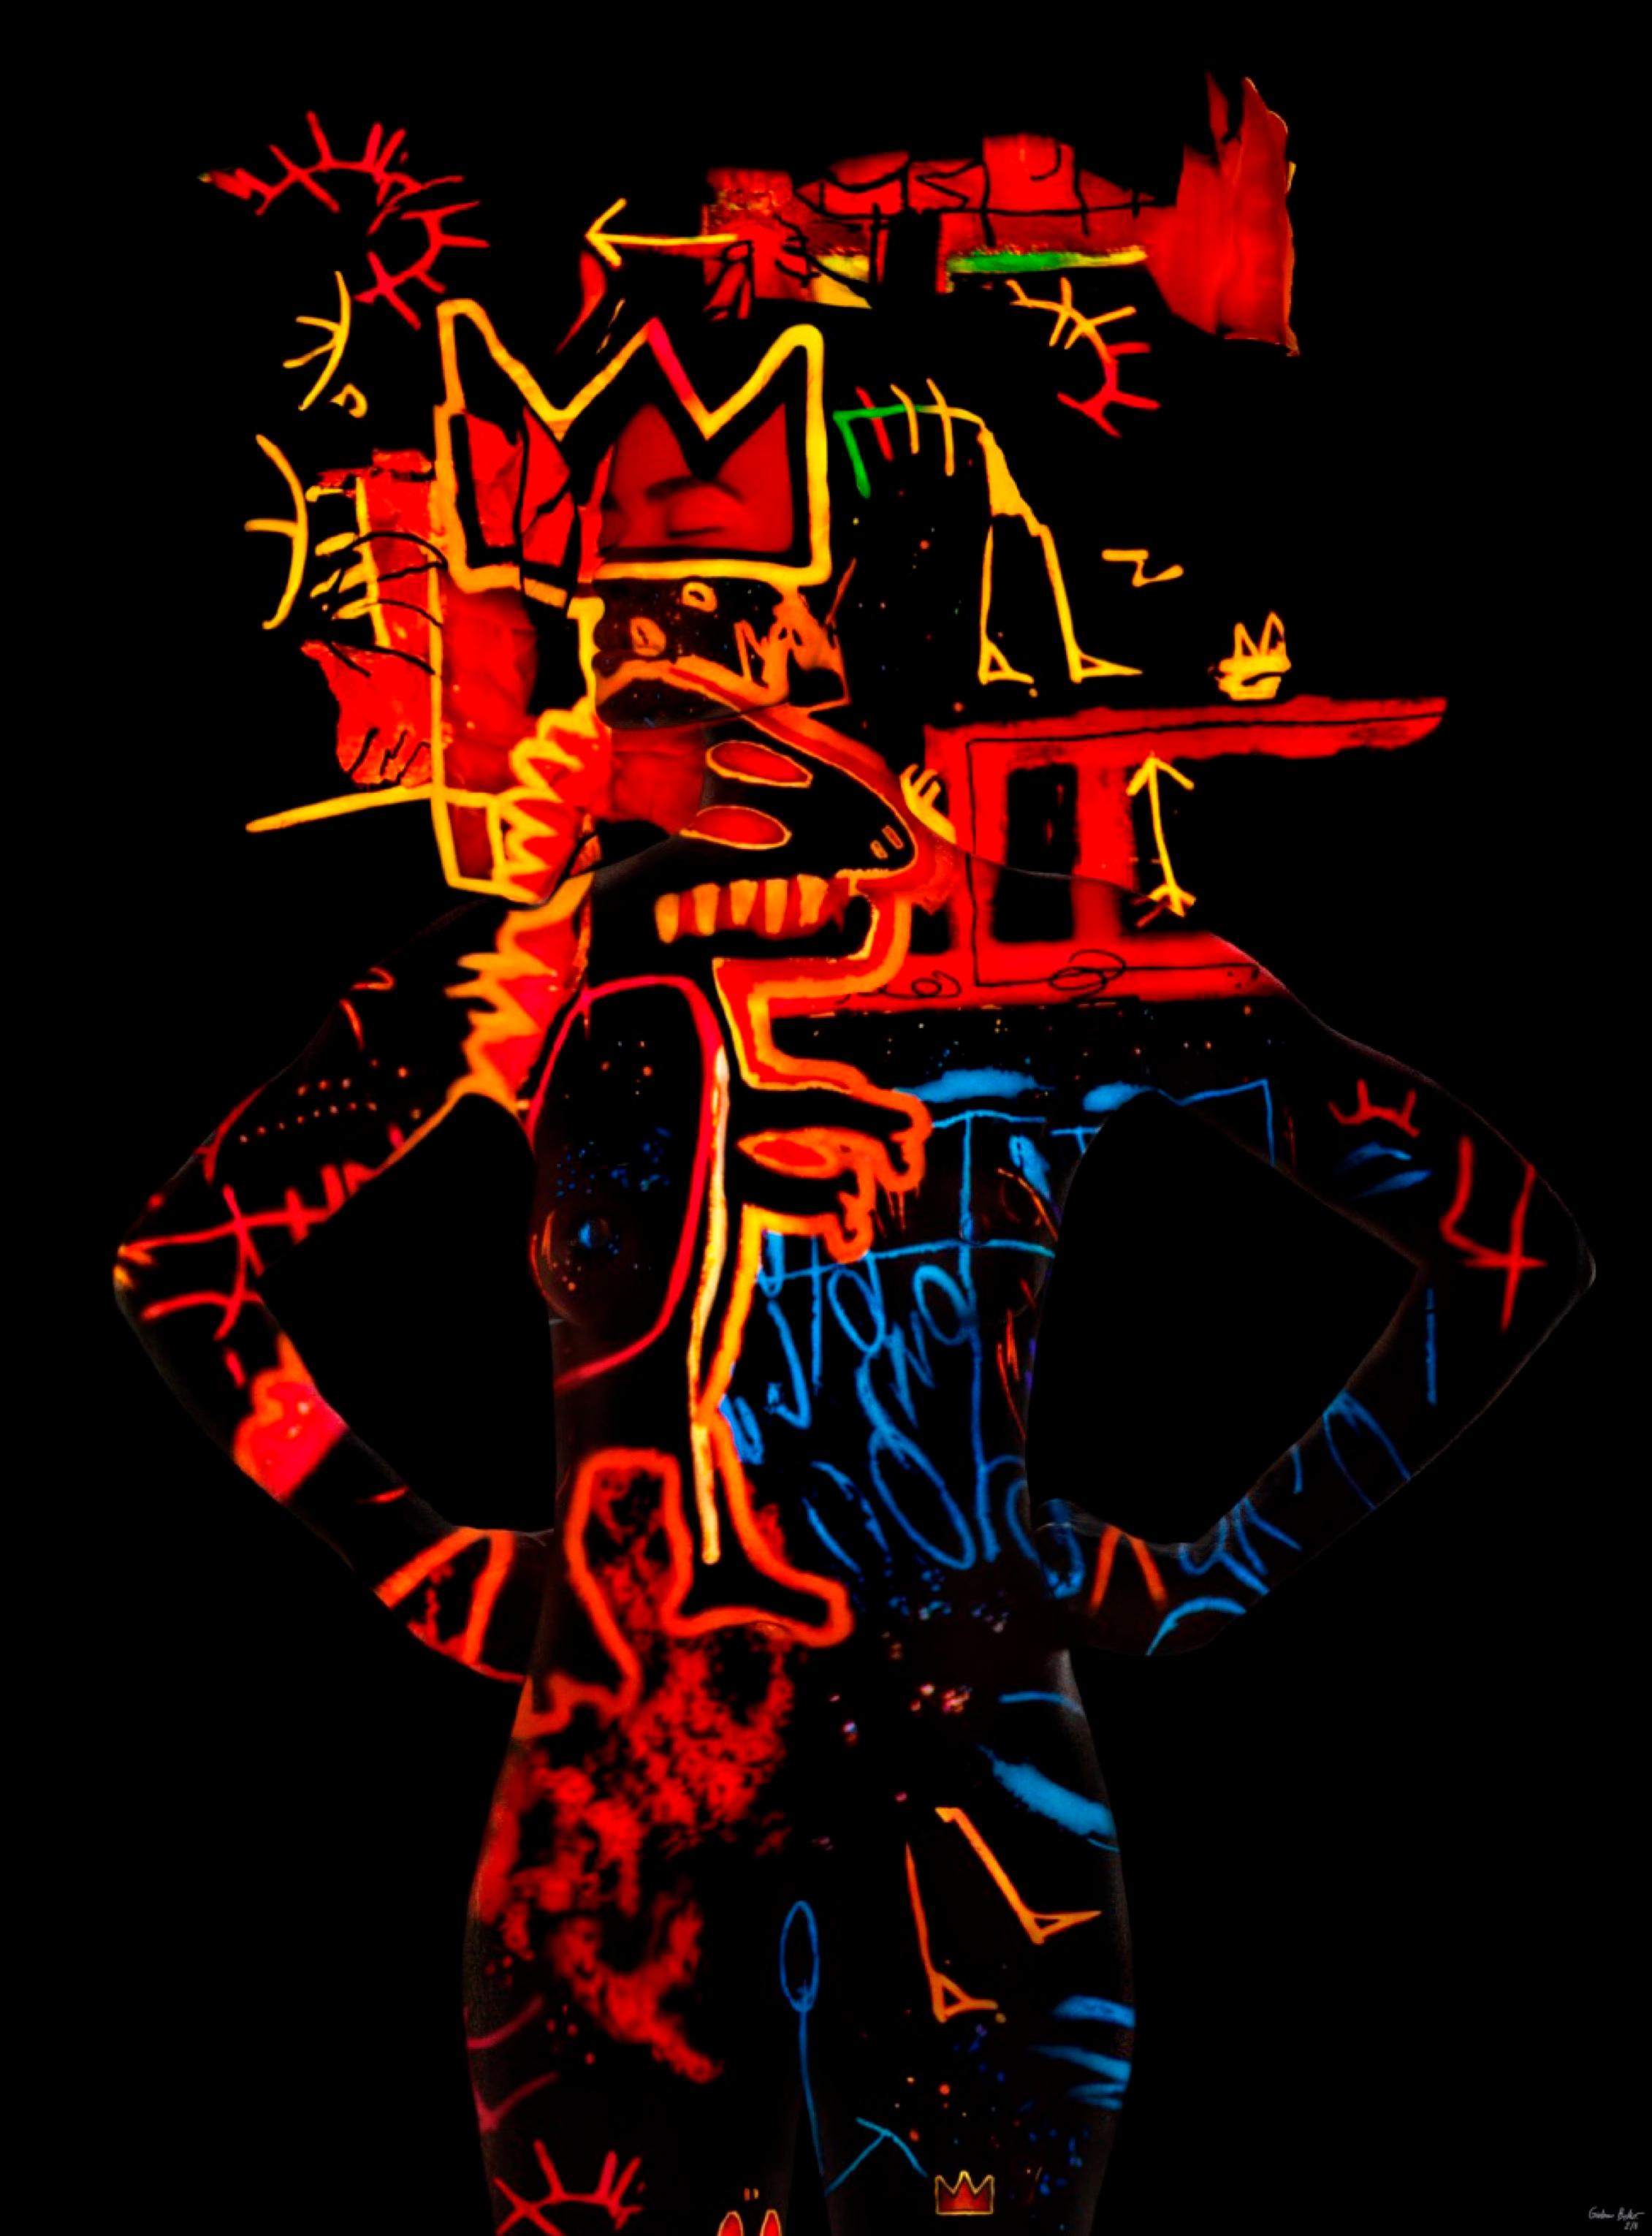 «JM Basquiat-GB5 » Photographie (FRAMÉE) 66" x 48" pouces Ed. 2/8 par Giuliano Bekor

Photographie d'art originale de Giuliano Bekor.
Signé et numéroté par l'artiste.

Titre : Série Basquiat - JMB-GB4 
Année : 2020
Taille d'impression : 48" x 66"